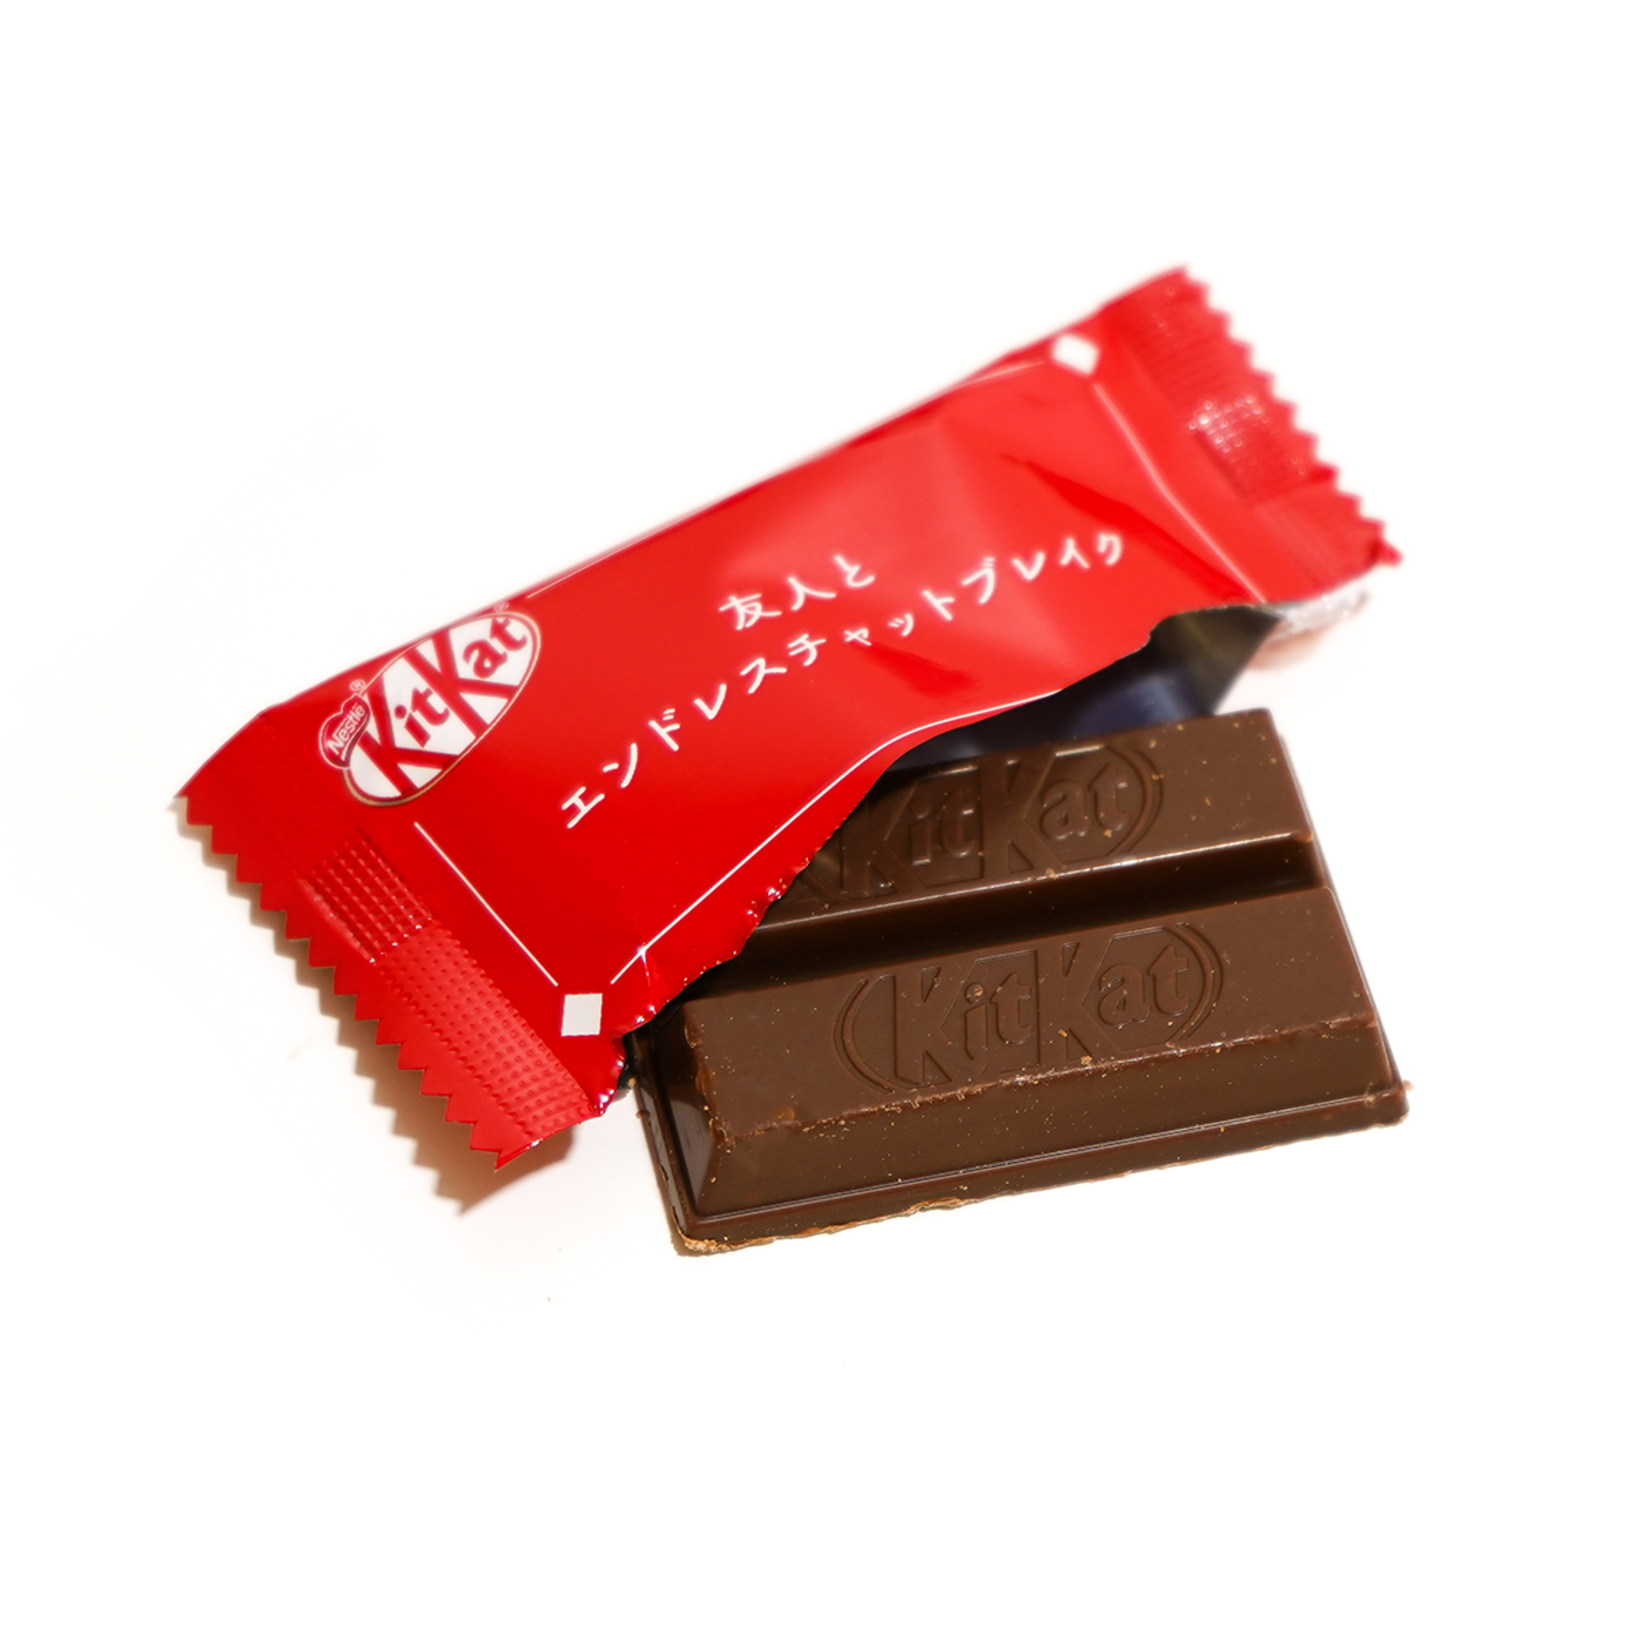 Nestle KitKat Minis "Original" 5.72oz